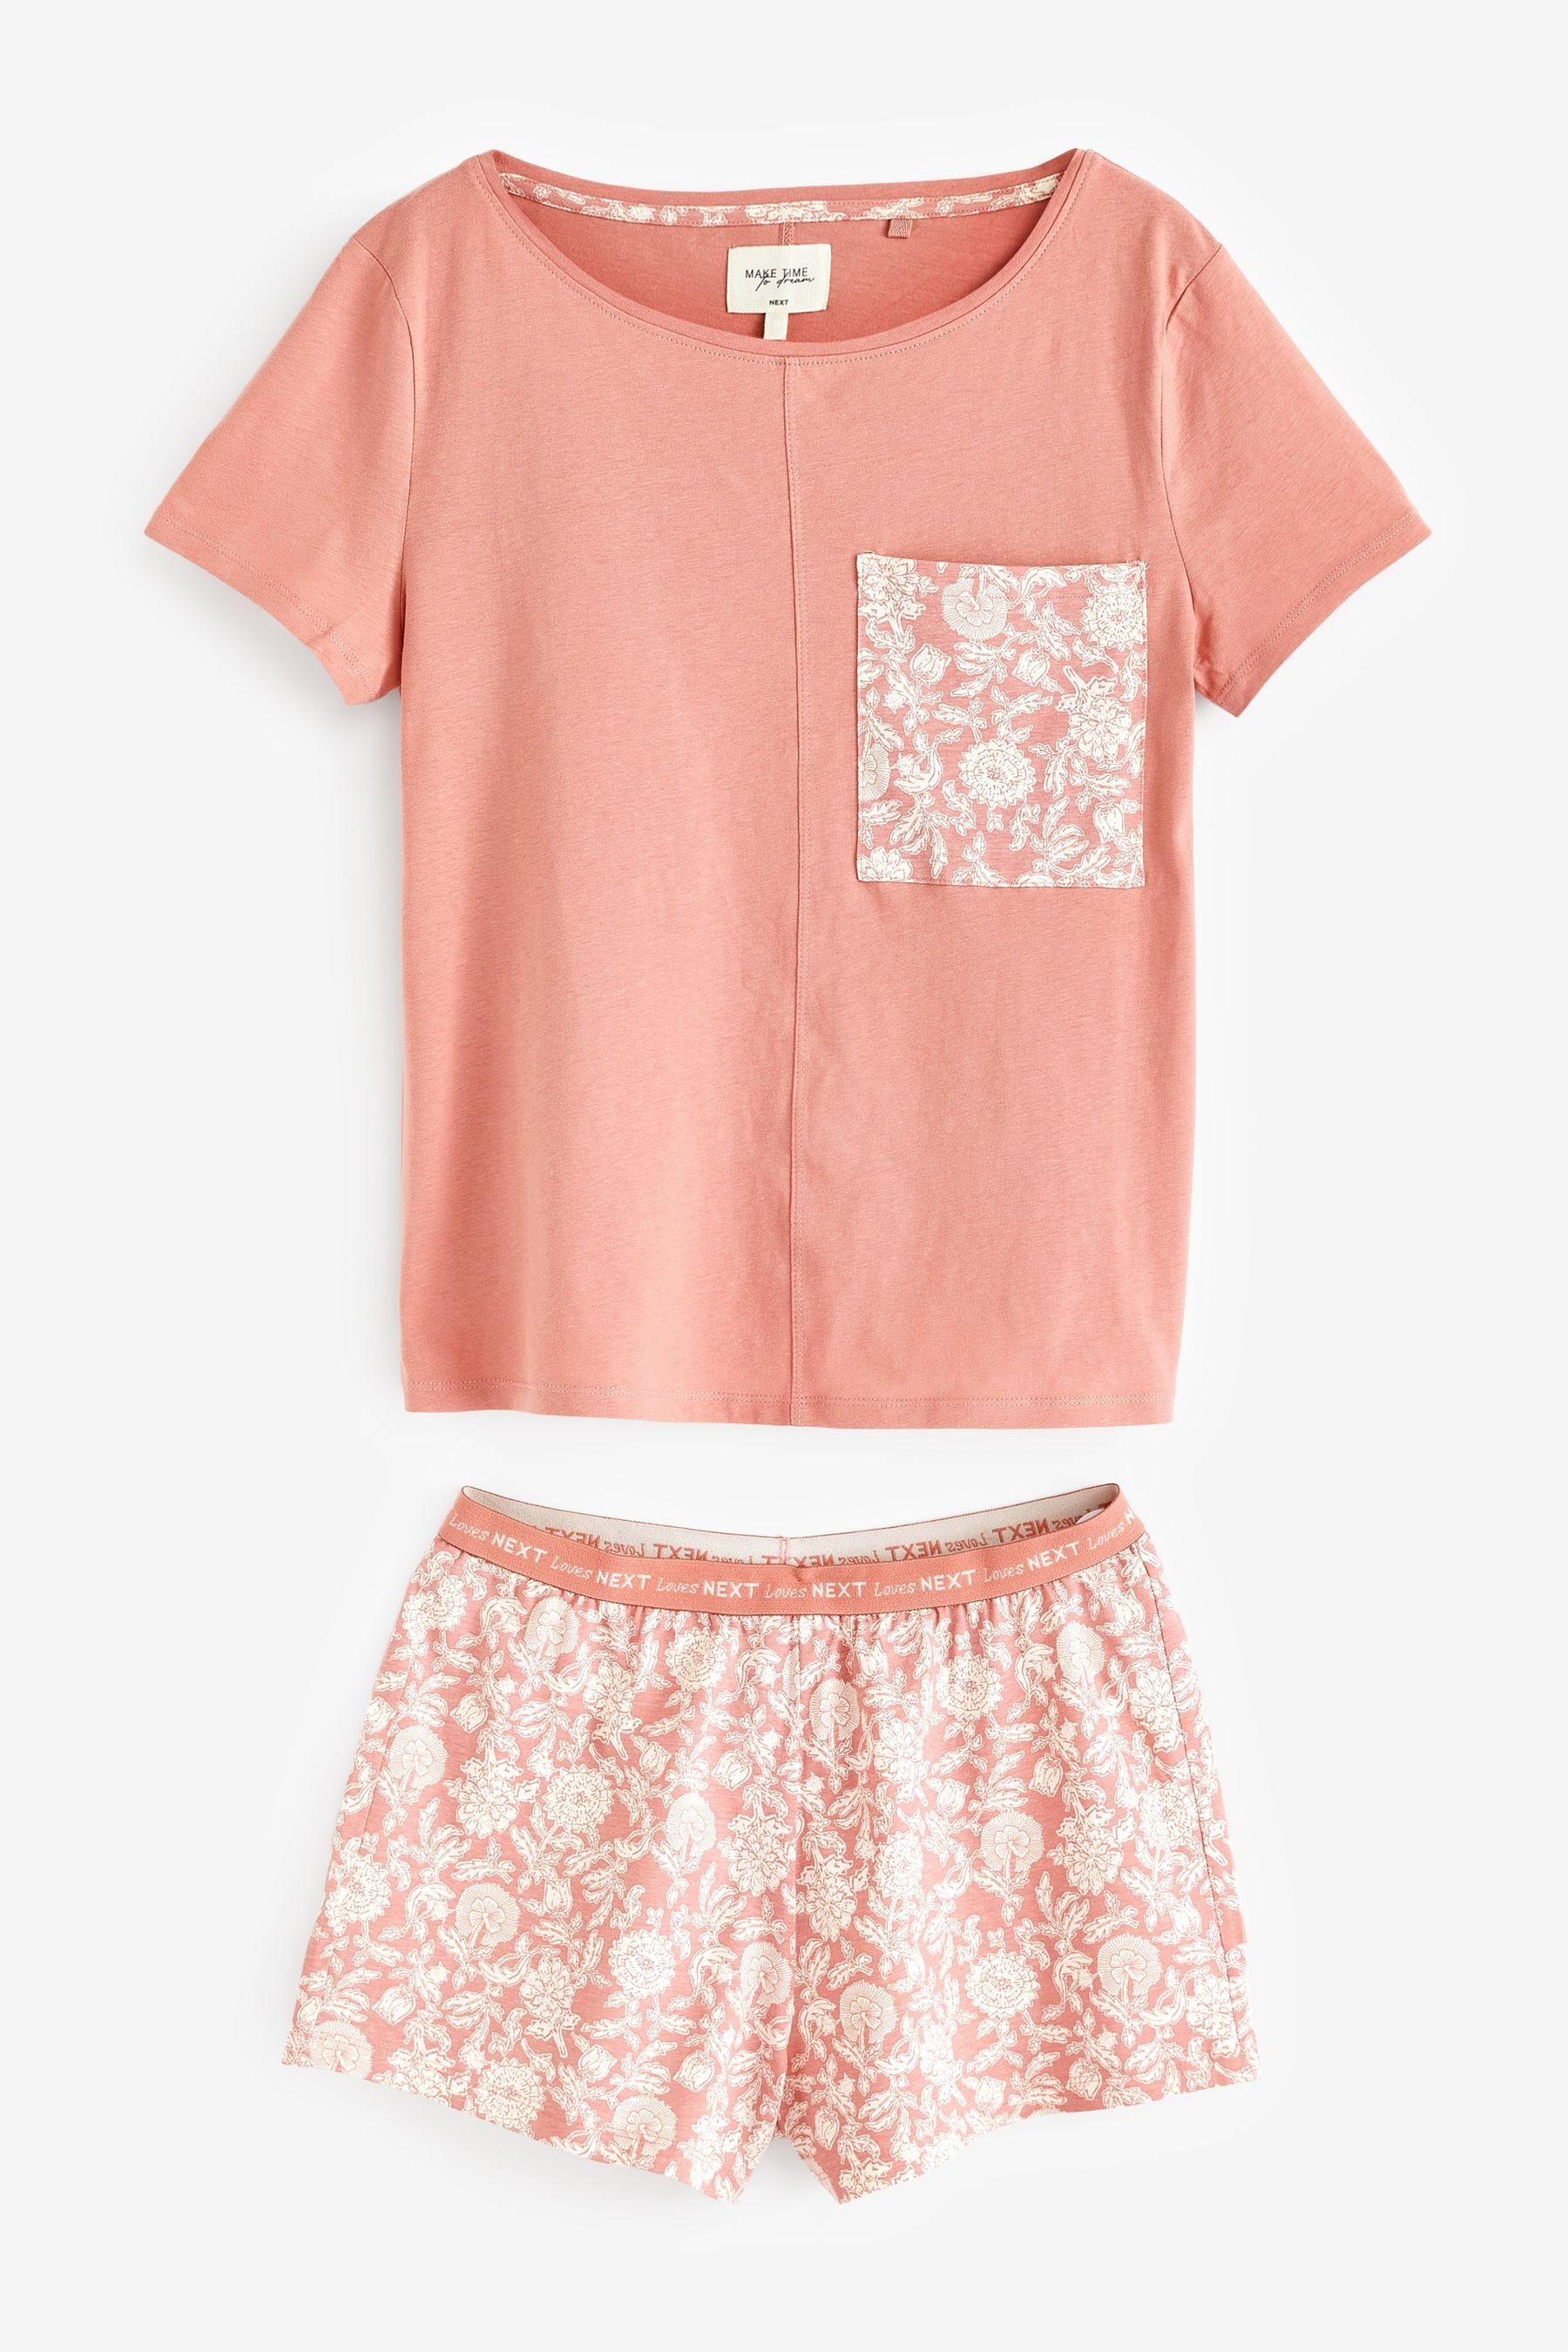 tlg) Coral Pink Schlafanzug Pyjama im Floral Next aus Set Baumwolle (2 Kurzer